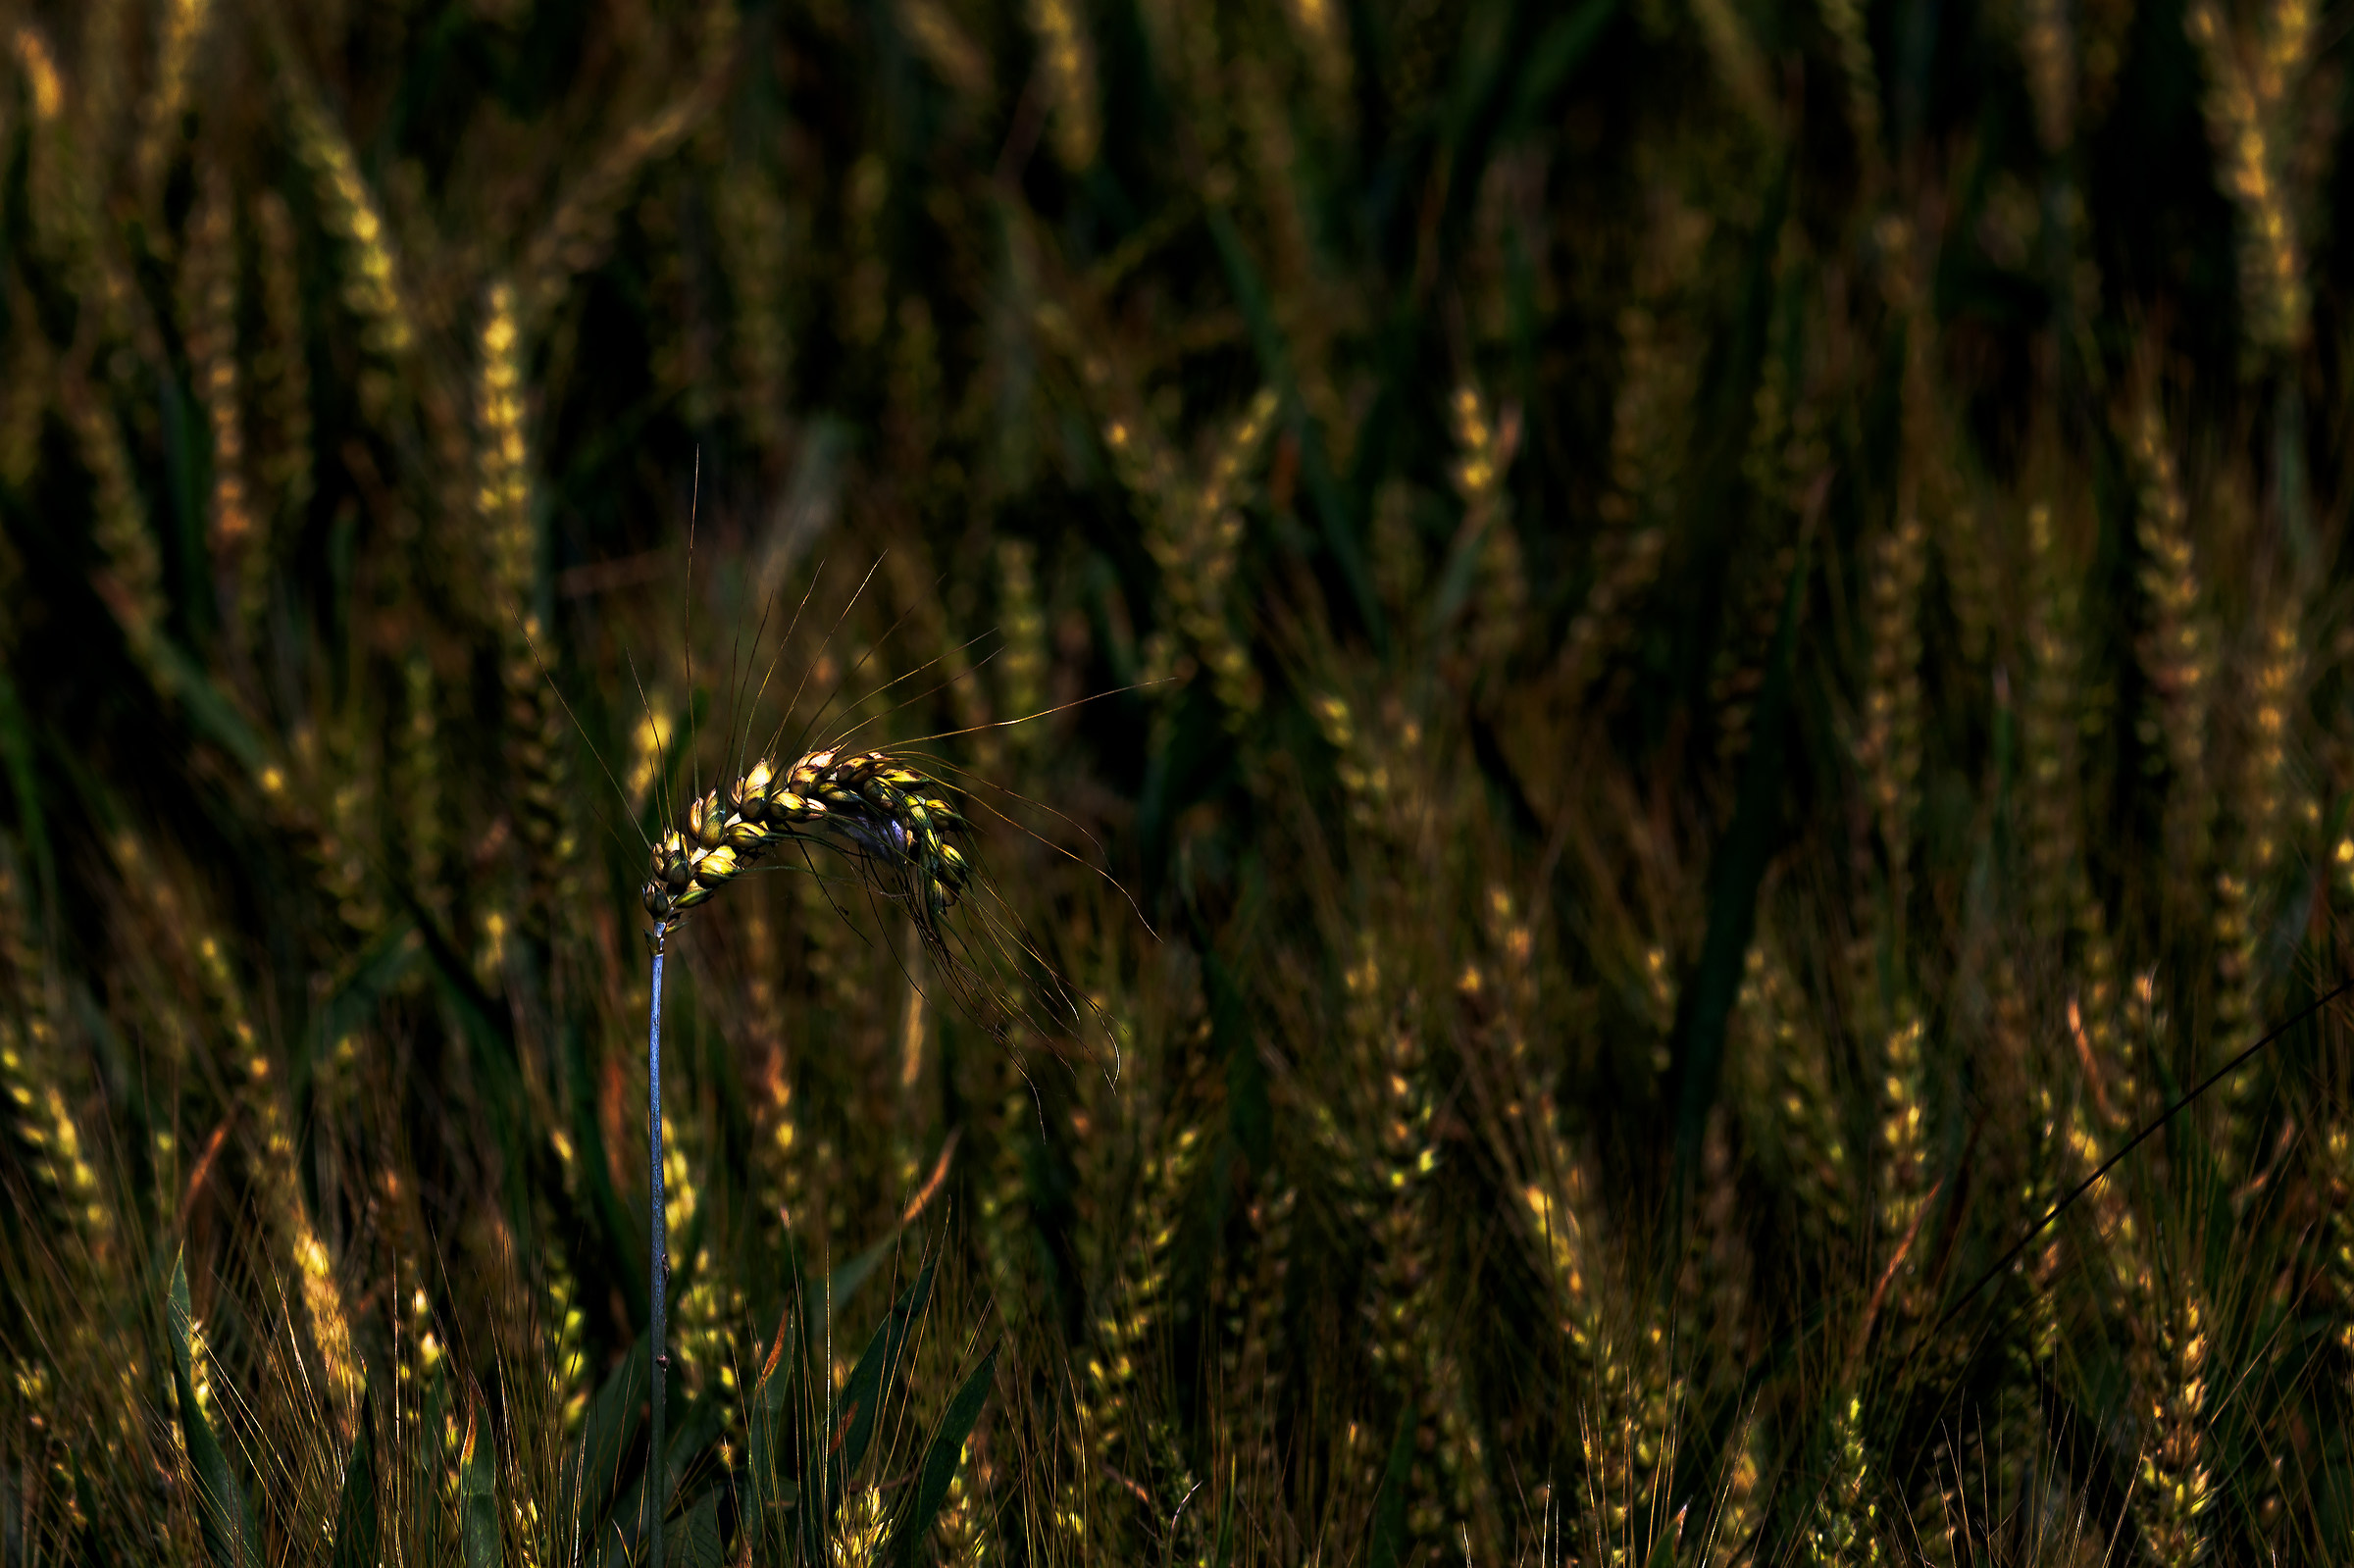 Ear of wheat...